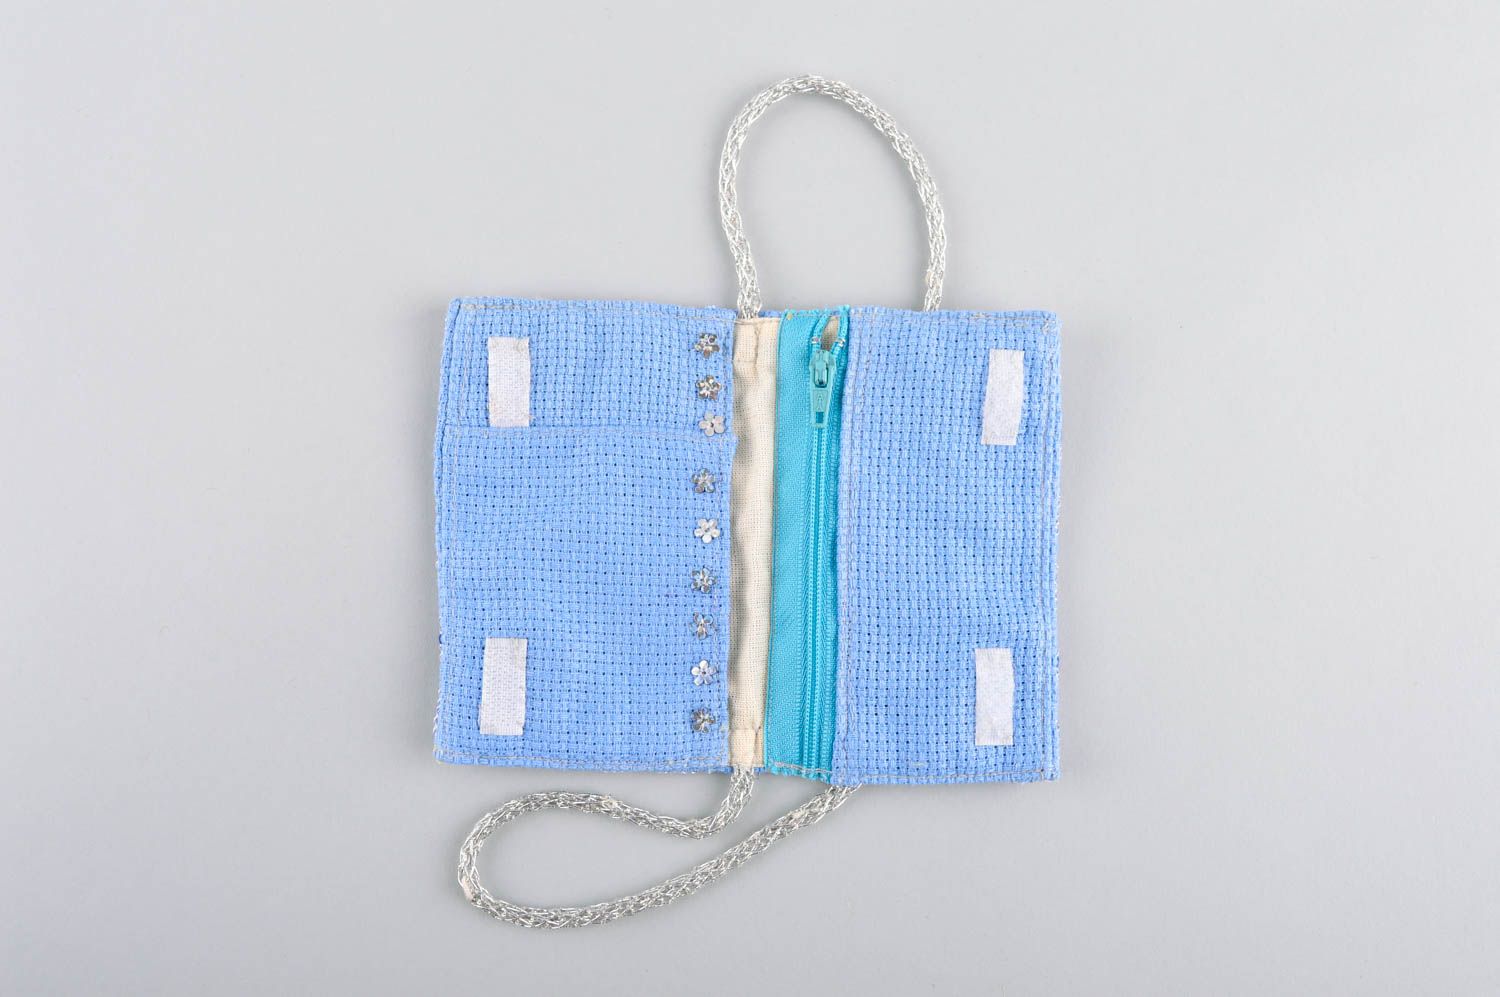 Сумка ручной работы сумка из ткани голубая с молнией женская сумка кошелек фото 4